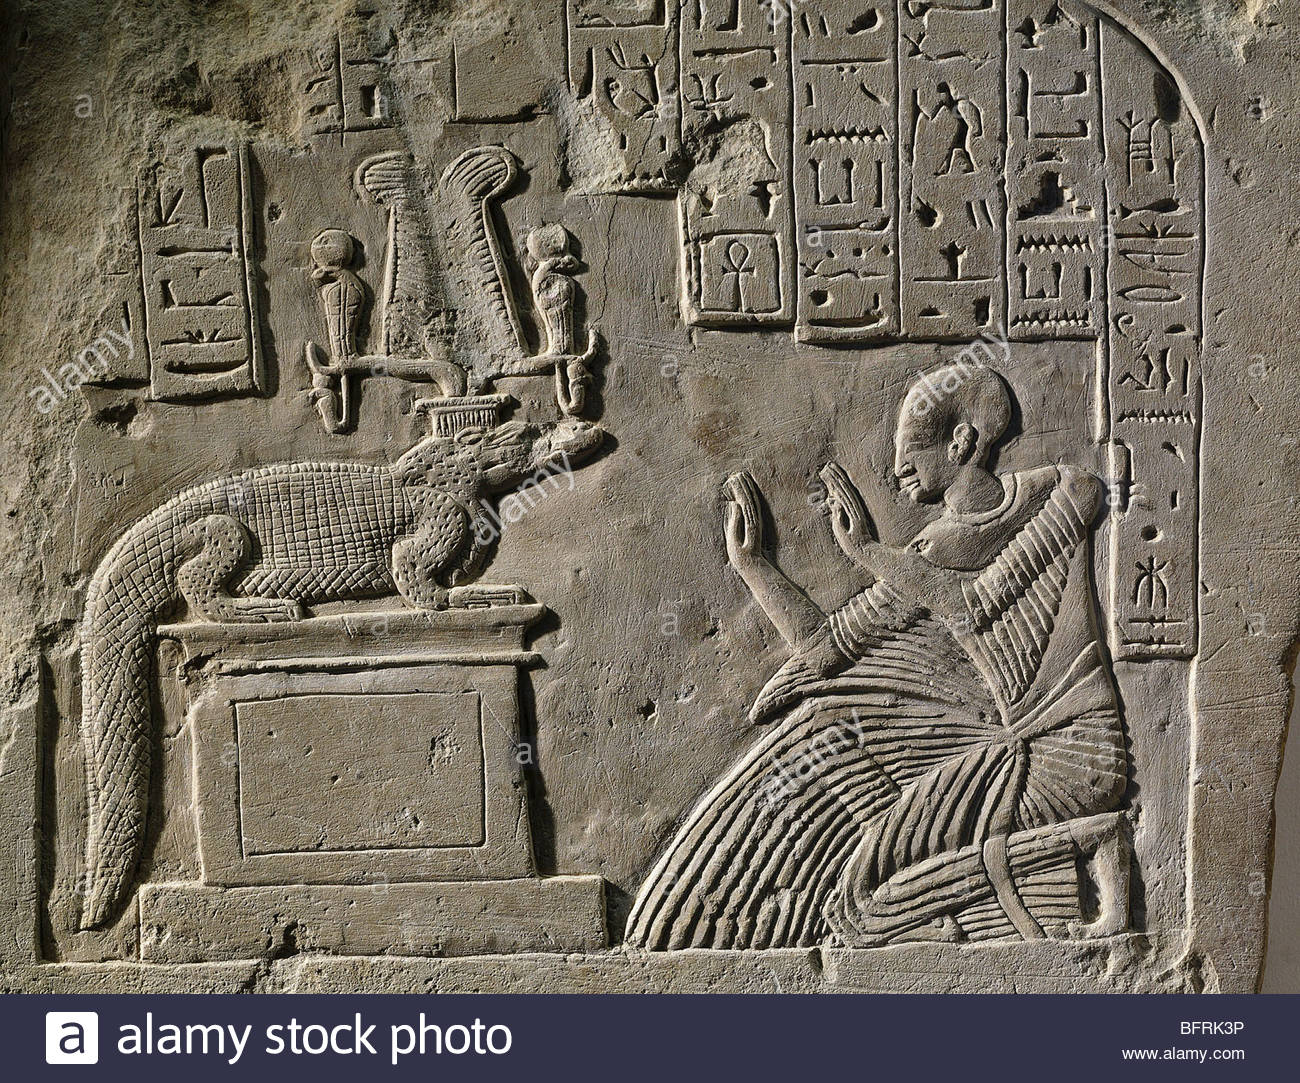 crocodile-god-sobek-re-worshipped-by-aamerut-relief-stele-of-aamerut-BFRK3P.jpg